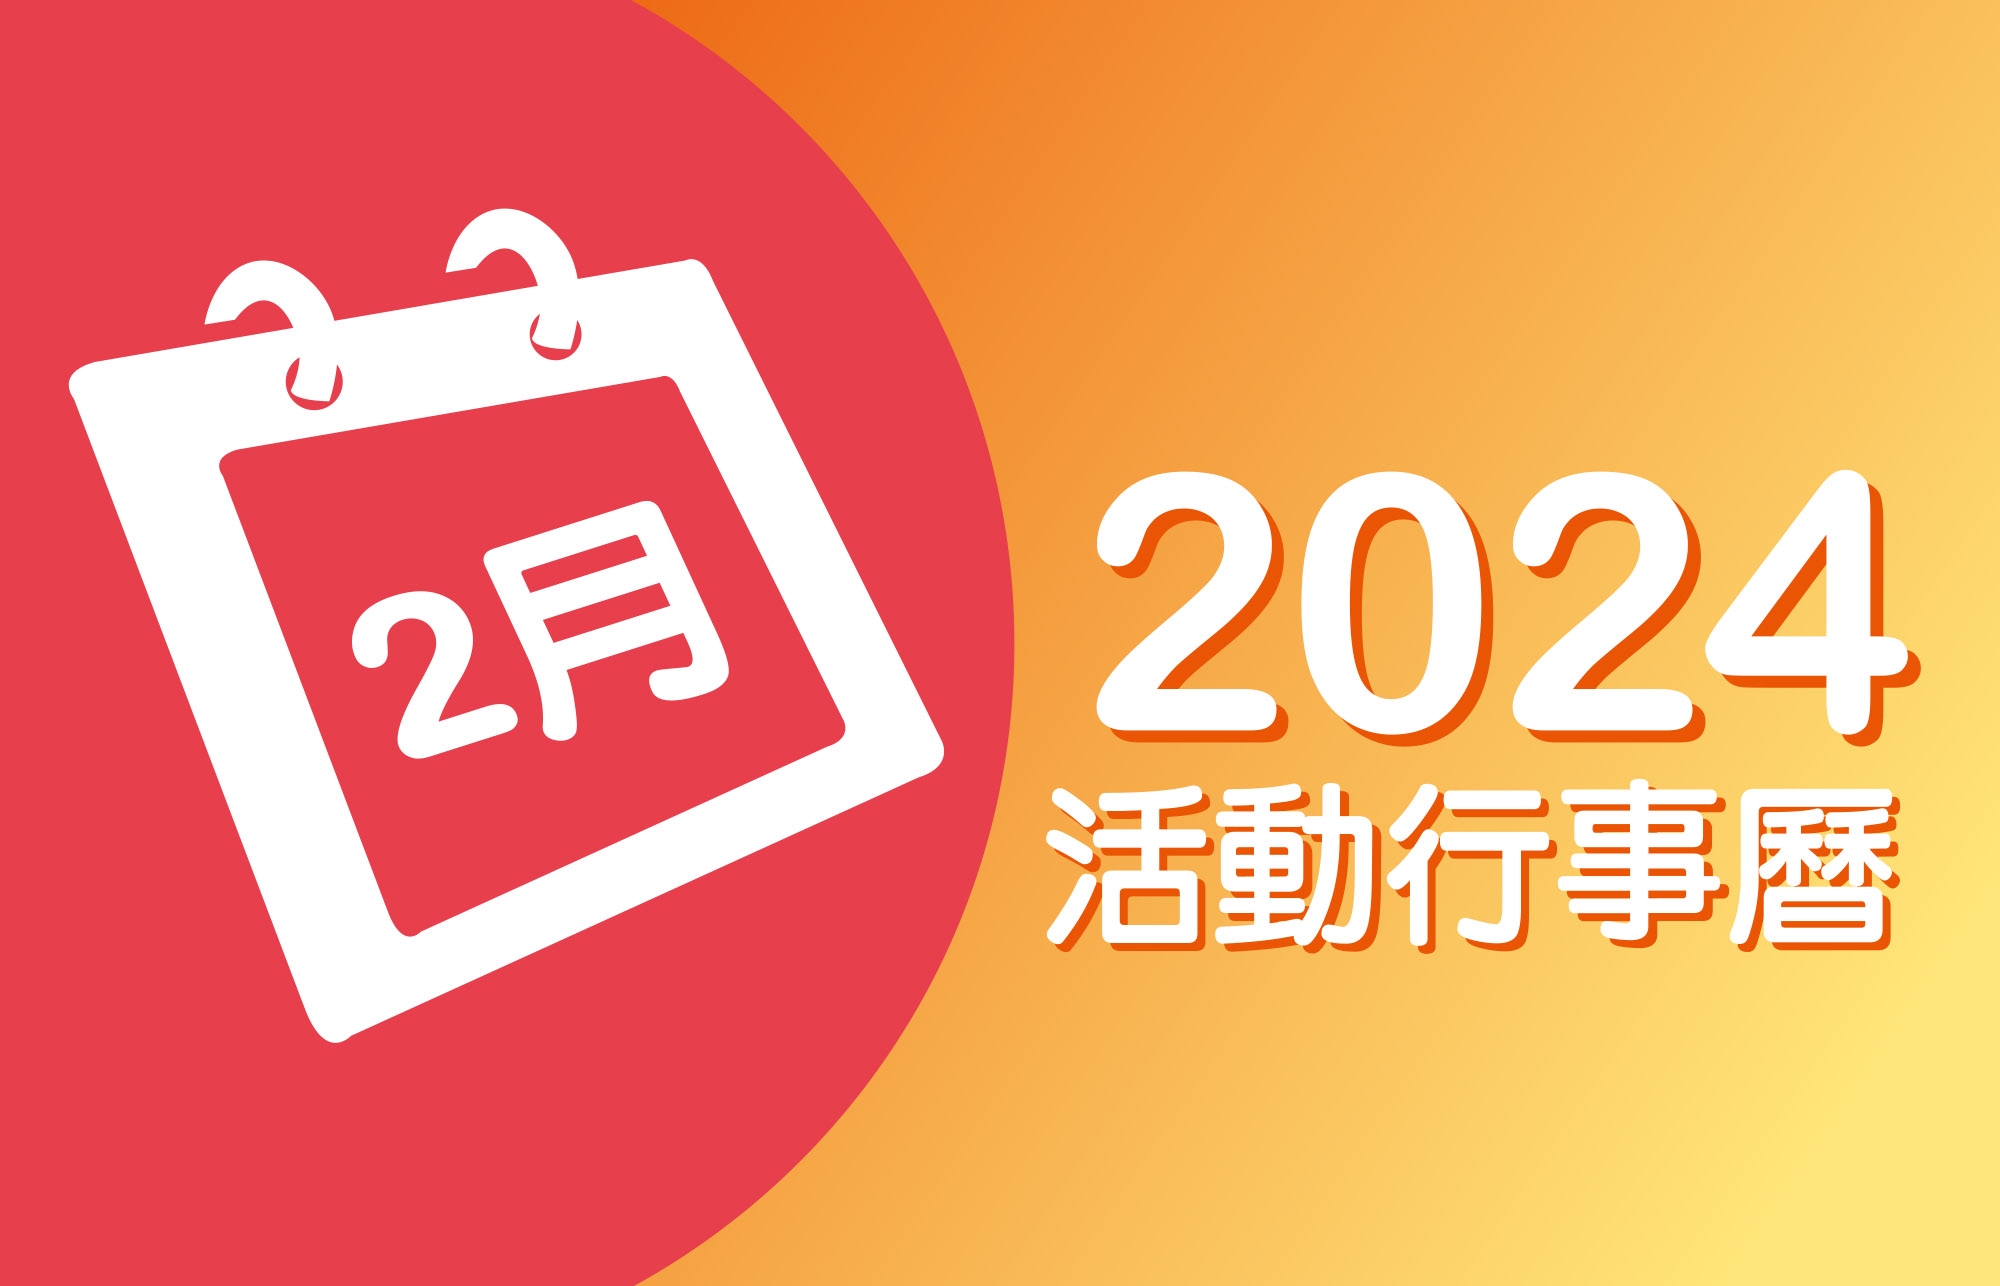 2024年2月 分院/講堂/中心 活動行事曆